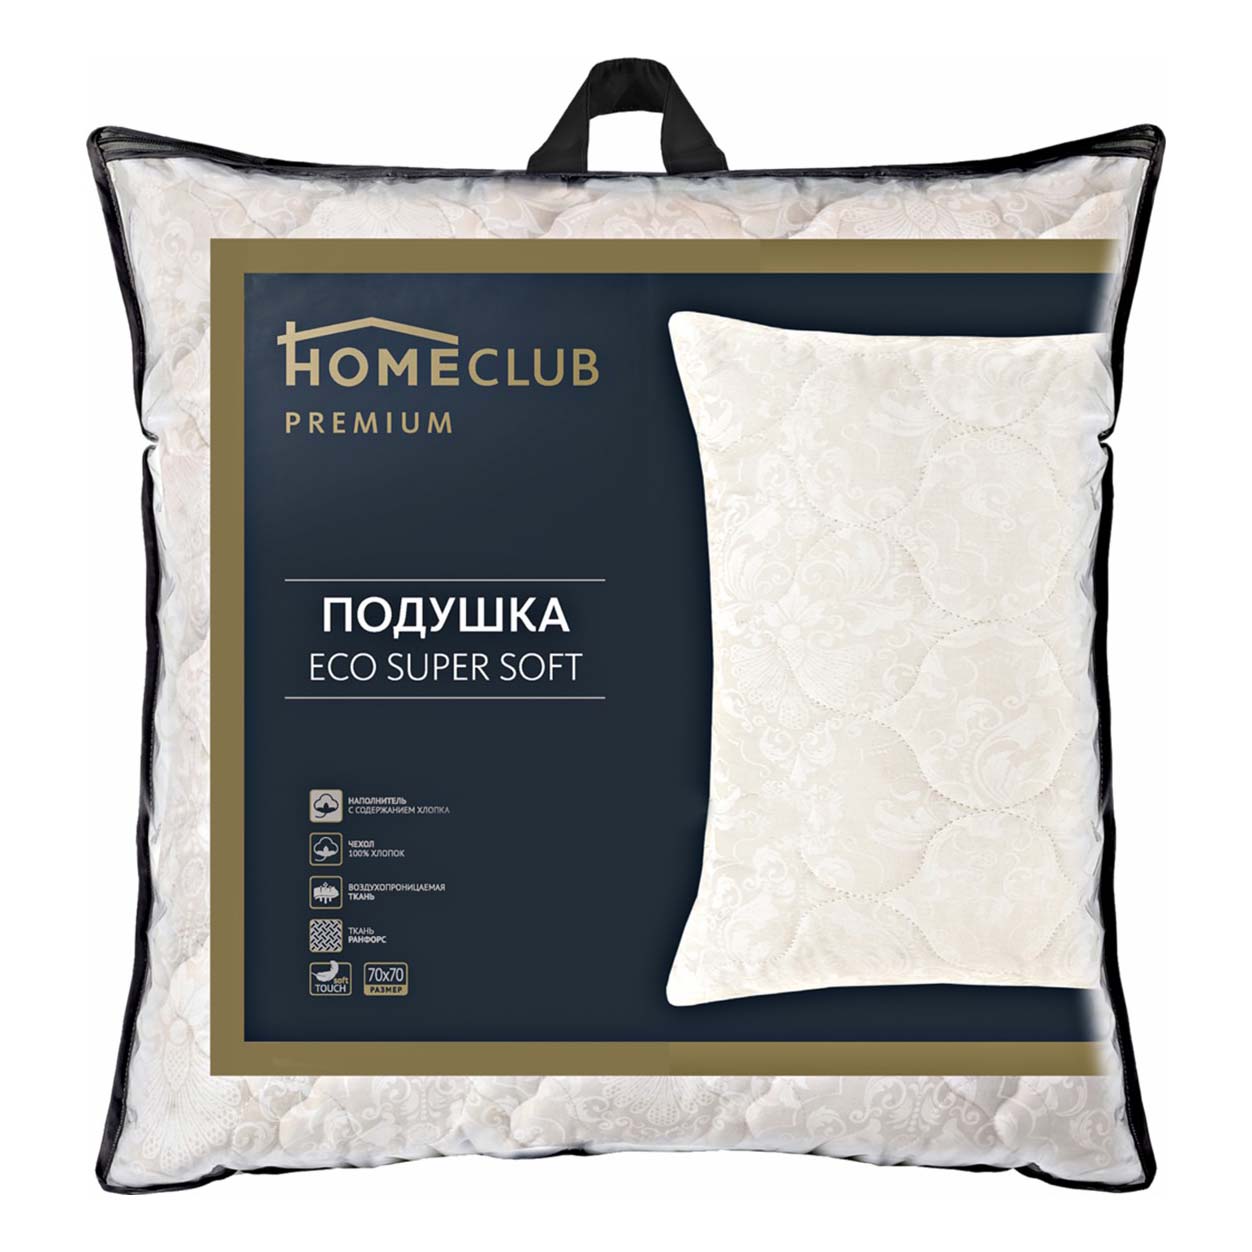 Подушка Homeclub Eco super soft 70 x 70 см